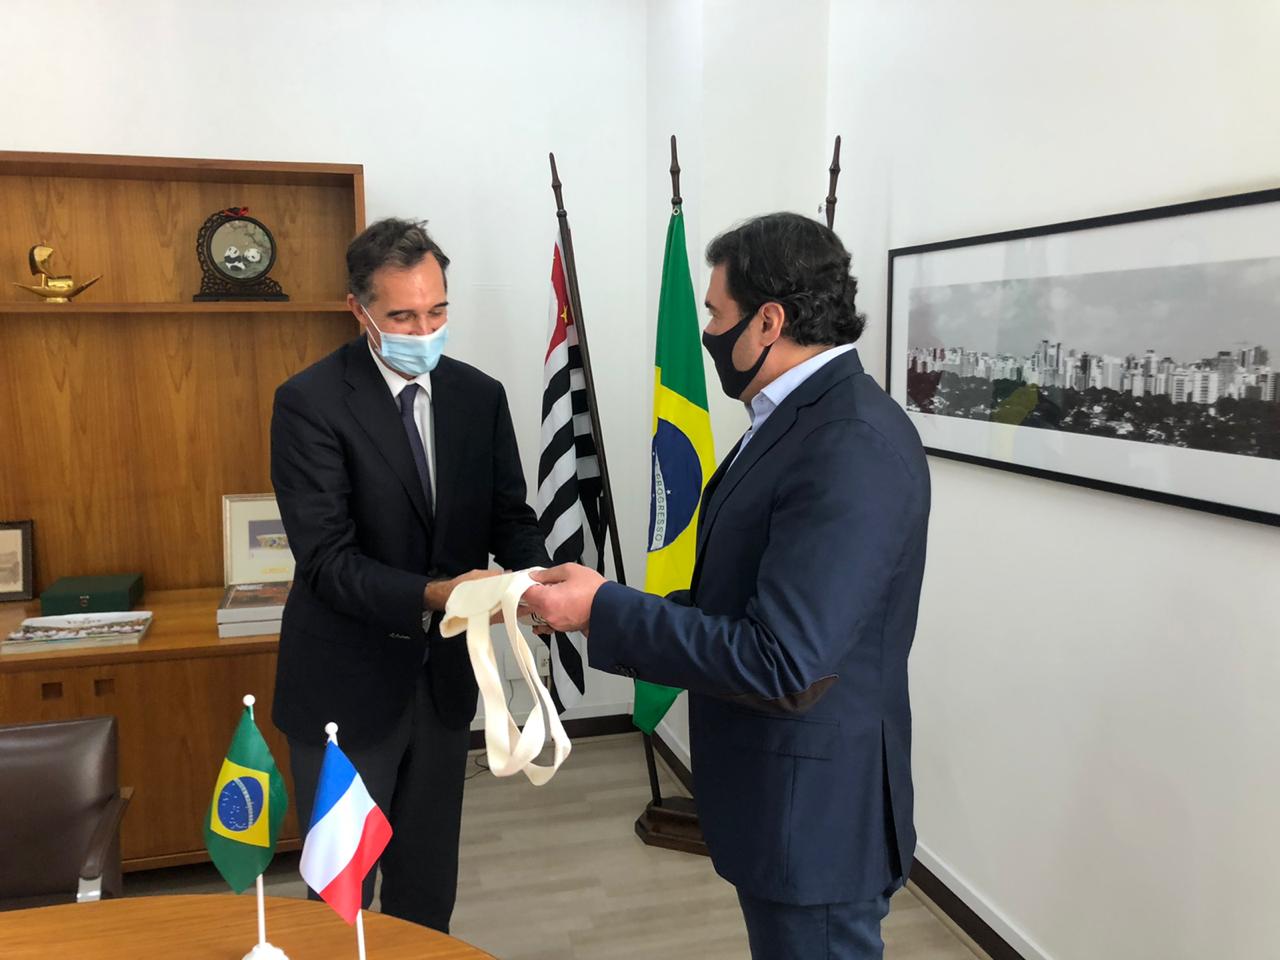 O Secretário de Relações Internacionais, Luiz Alvaro, e o Novo Cônsul da França conversam olhando um para o outro.